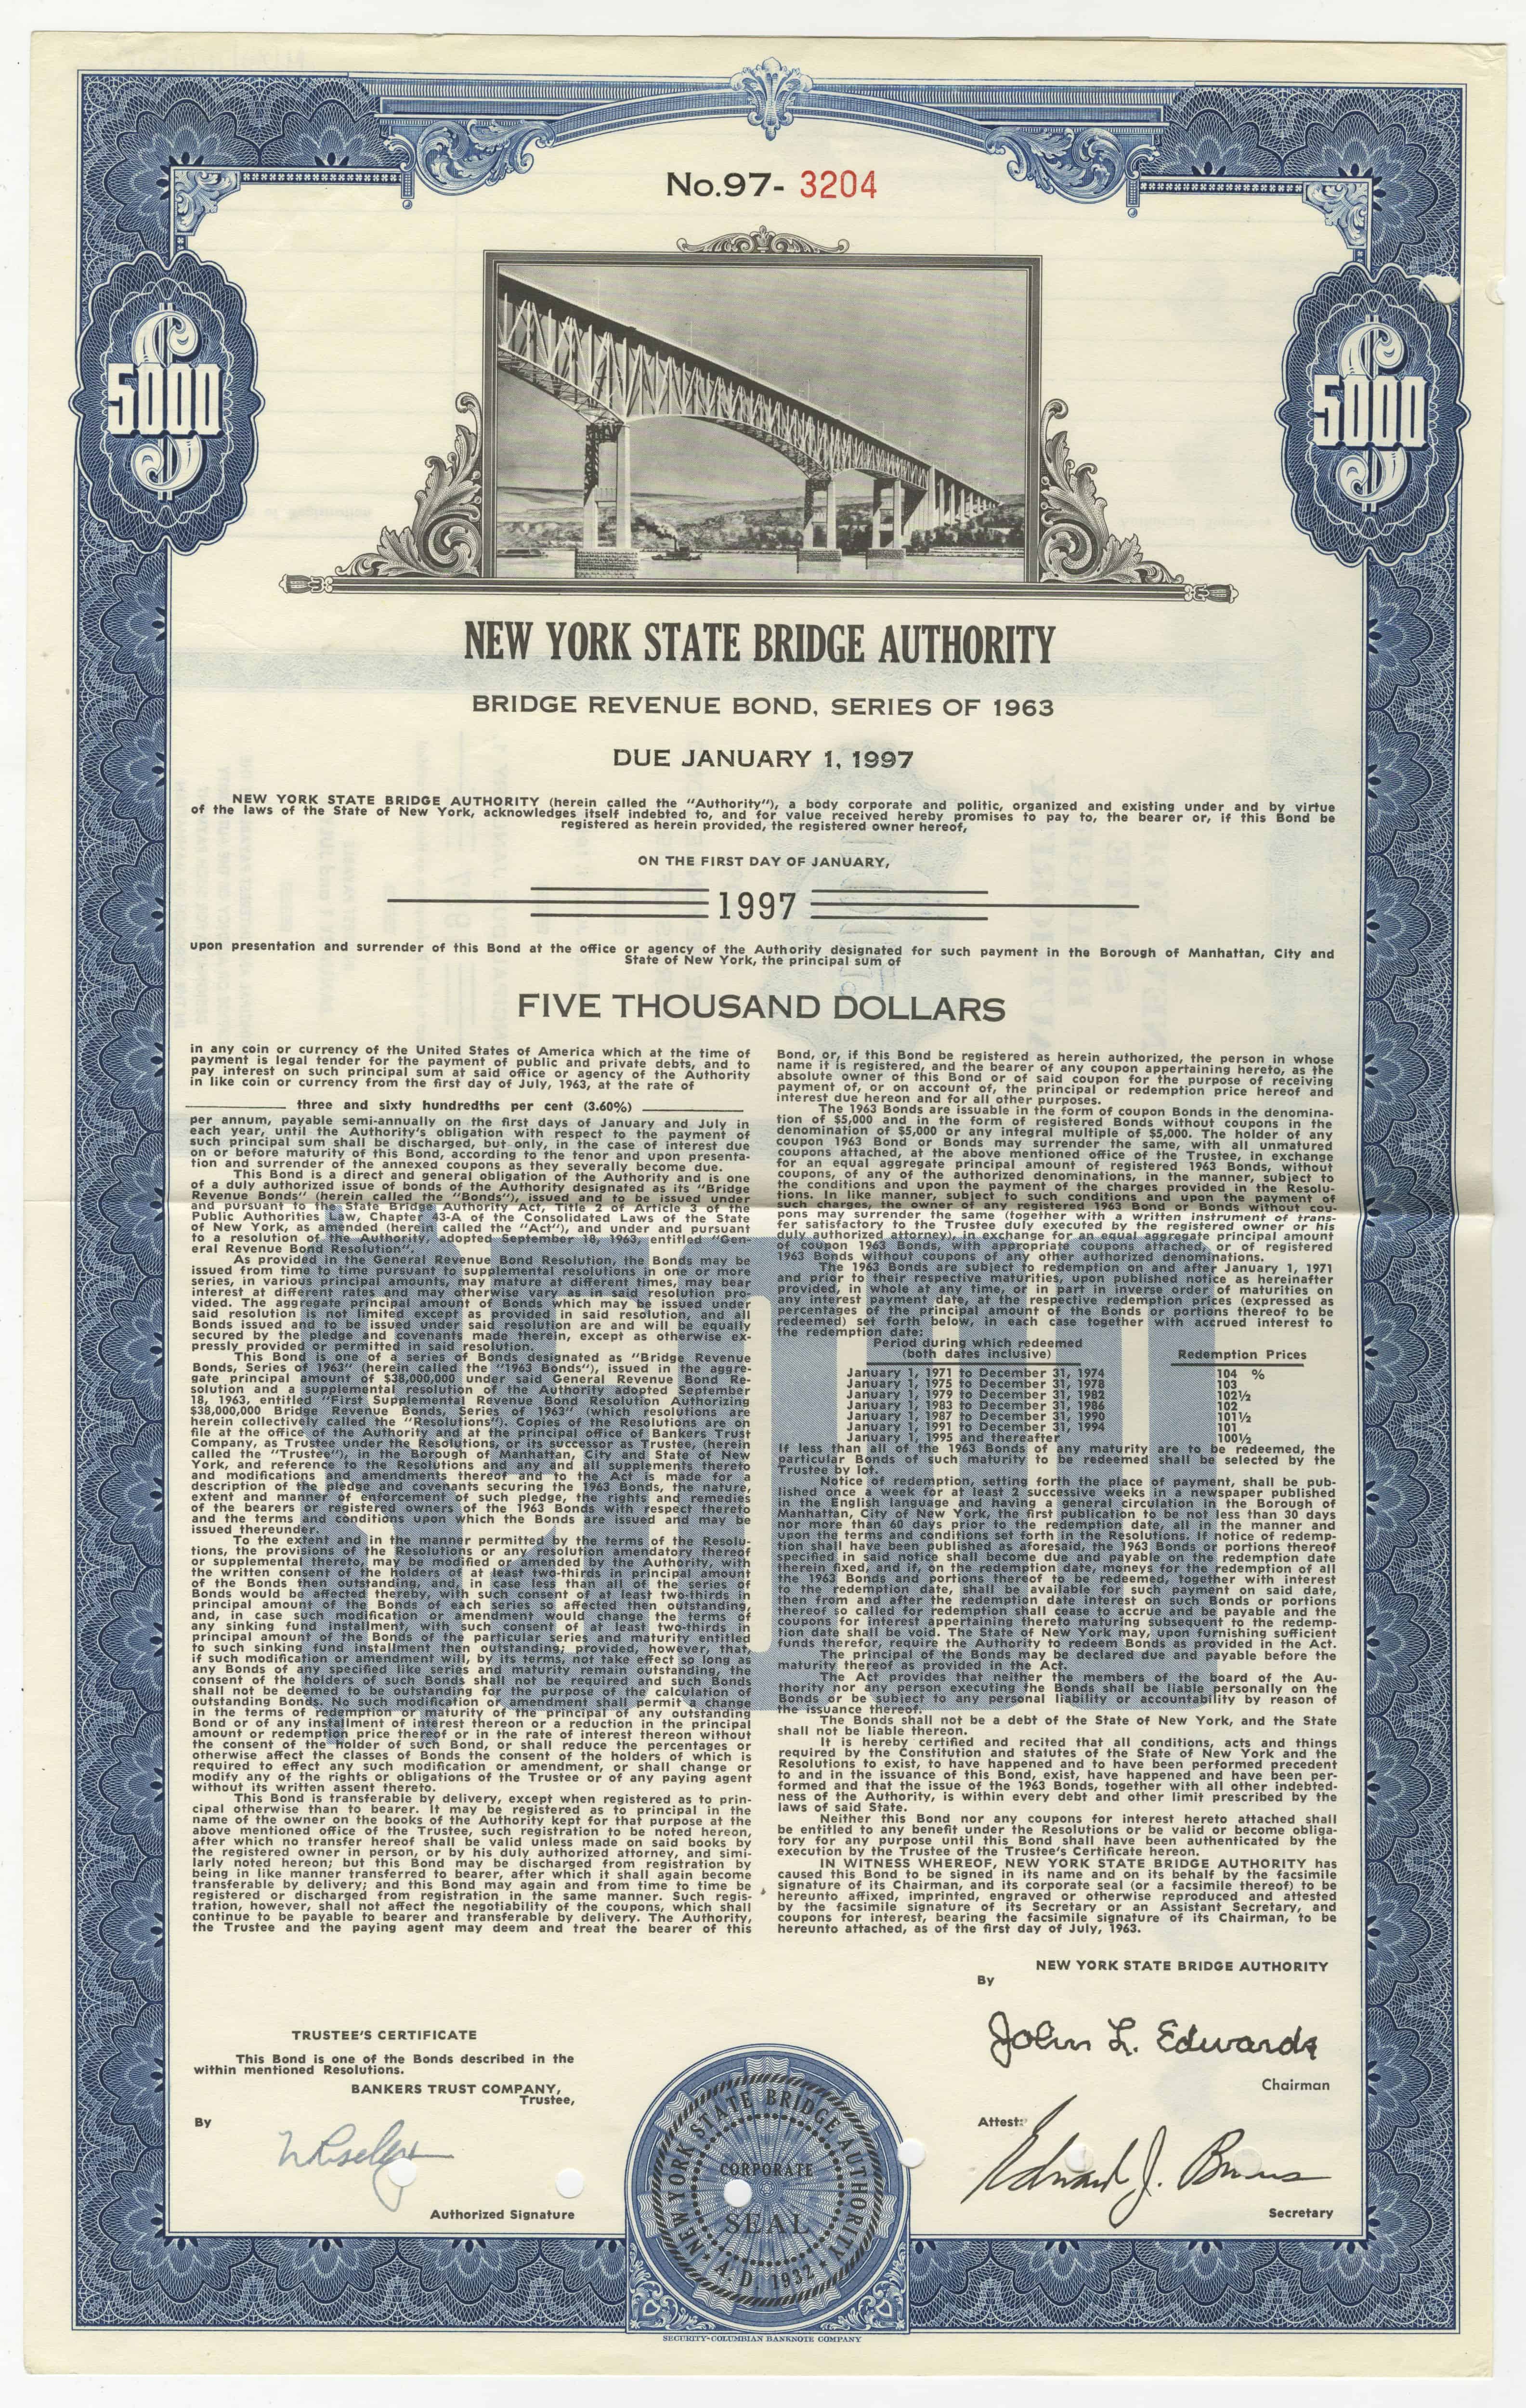 Obligacje New York State Bridge Authority z 1 stycznia 1963 roku